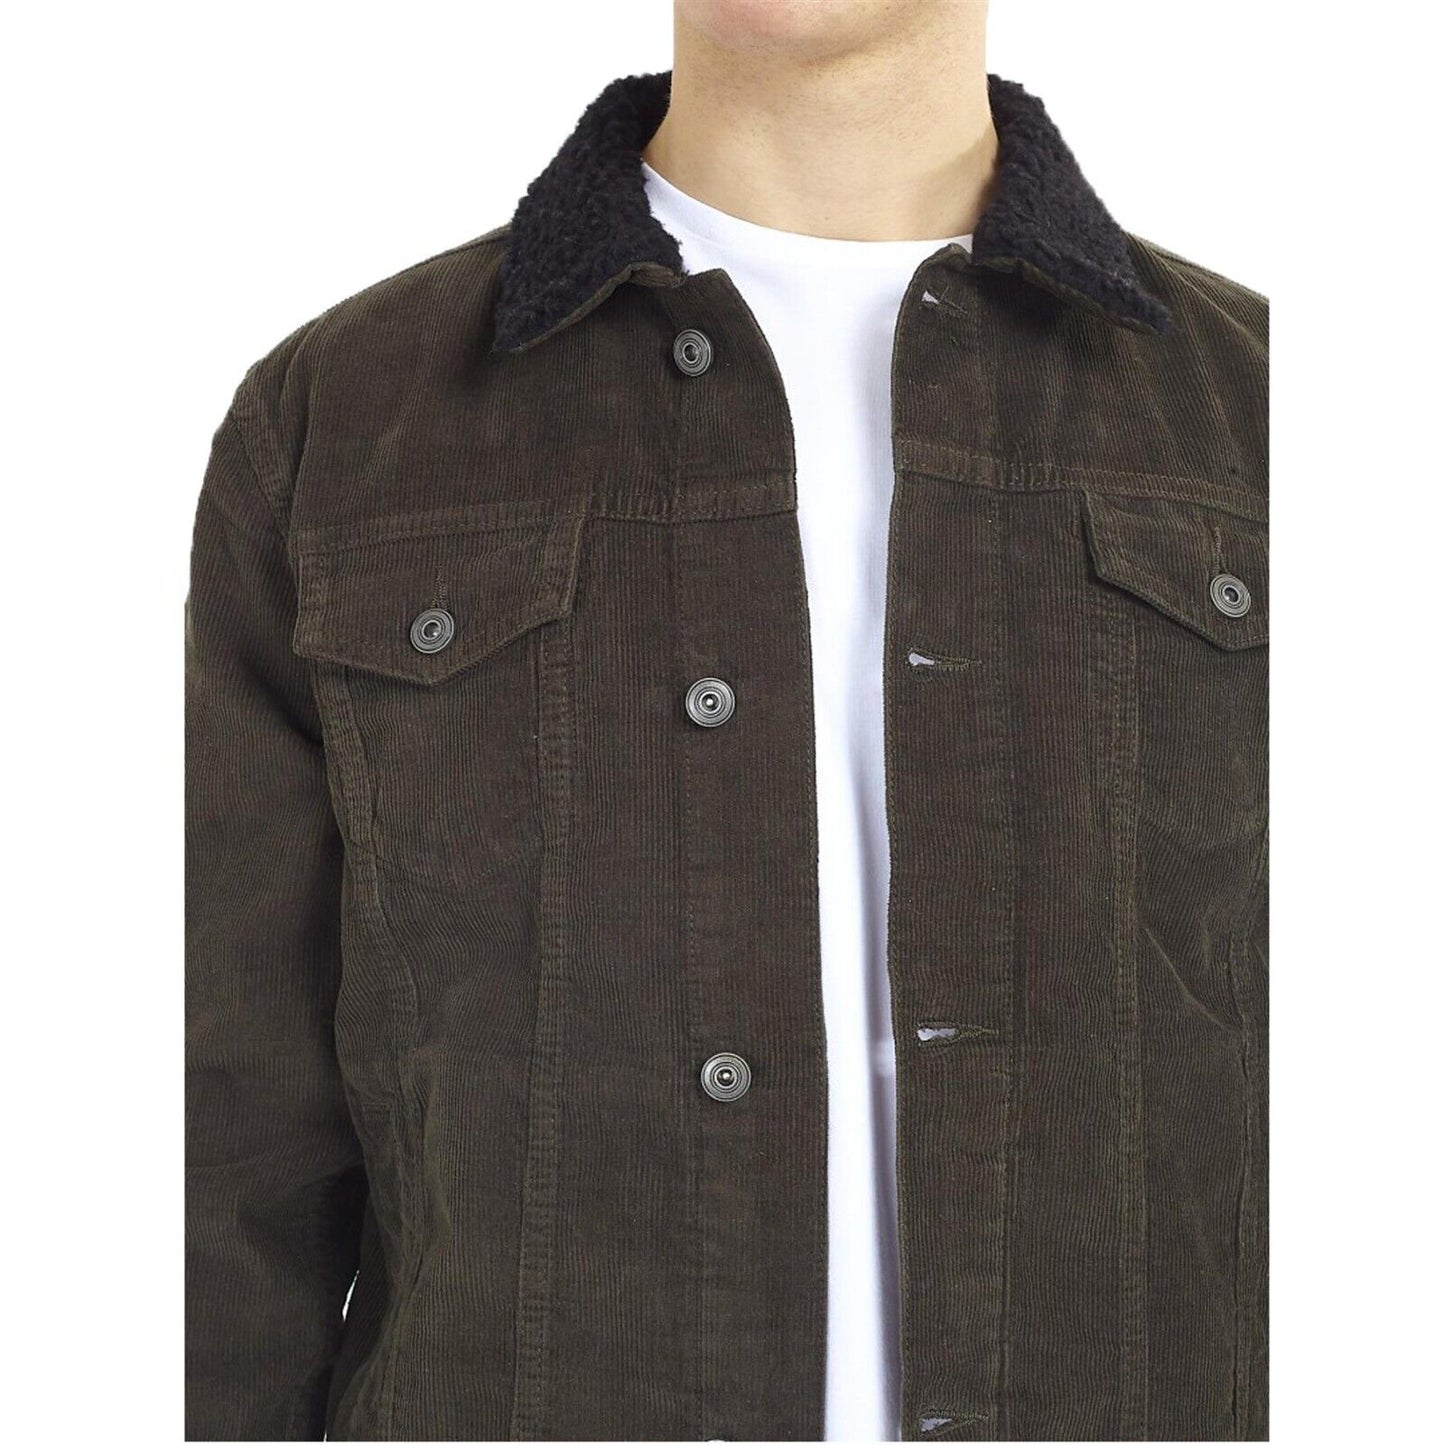 Brave Soul Mens Prestwich Corduroy Jacket Borg Collar Button Up Winter Coat S-XL